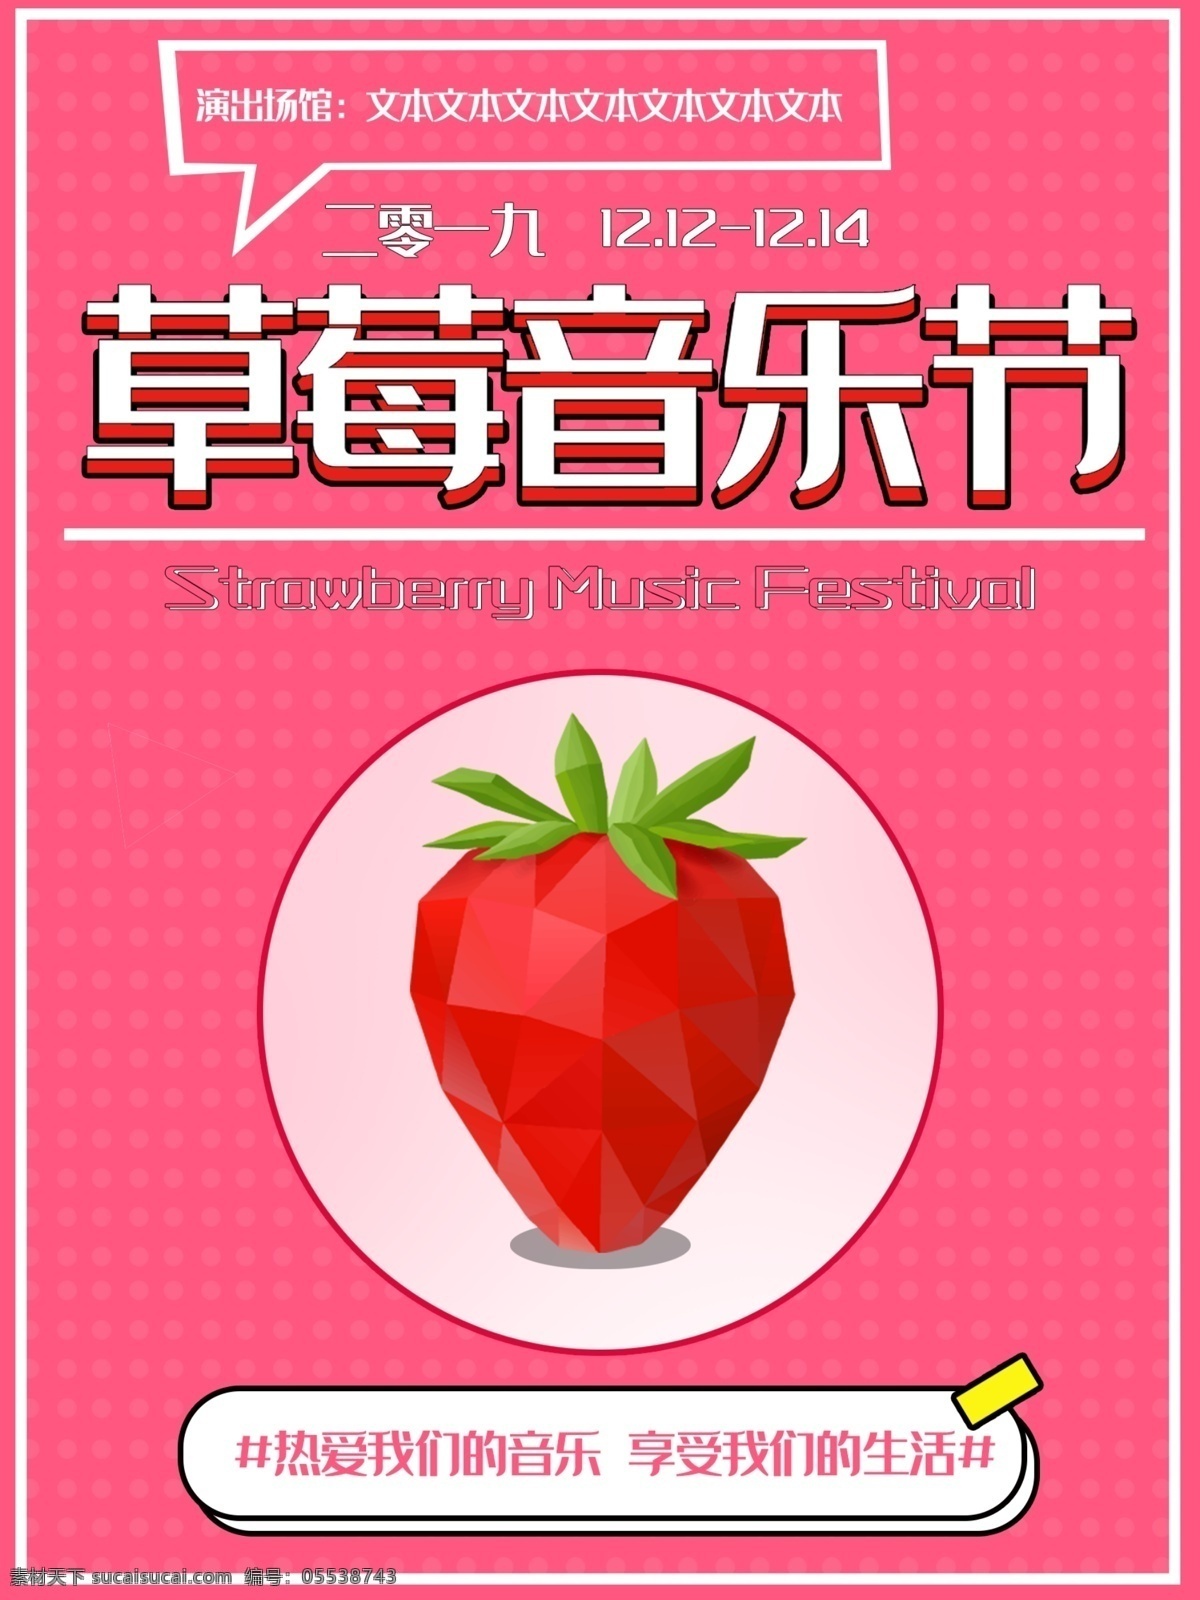 草莓 音乐节 海报 粉色 草莓音乐节 音乐 生活 商业海报